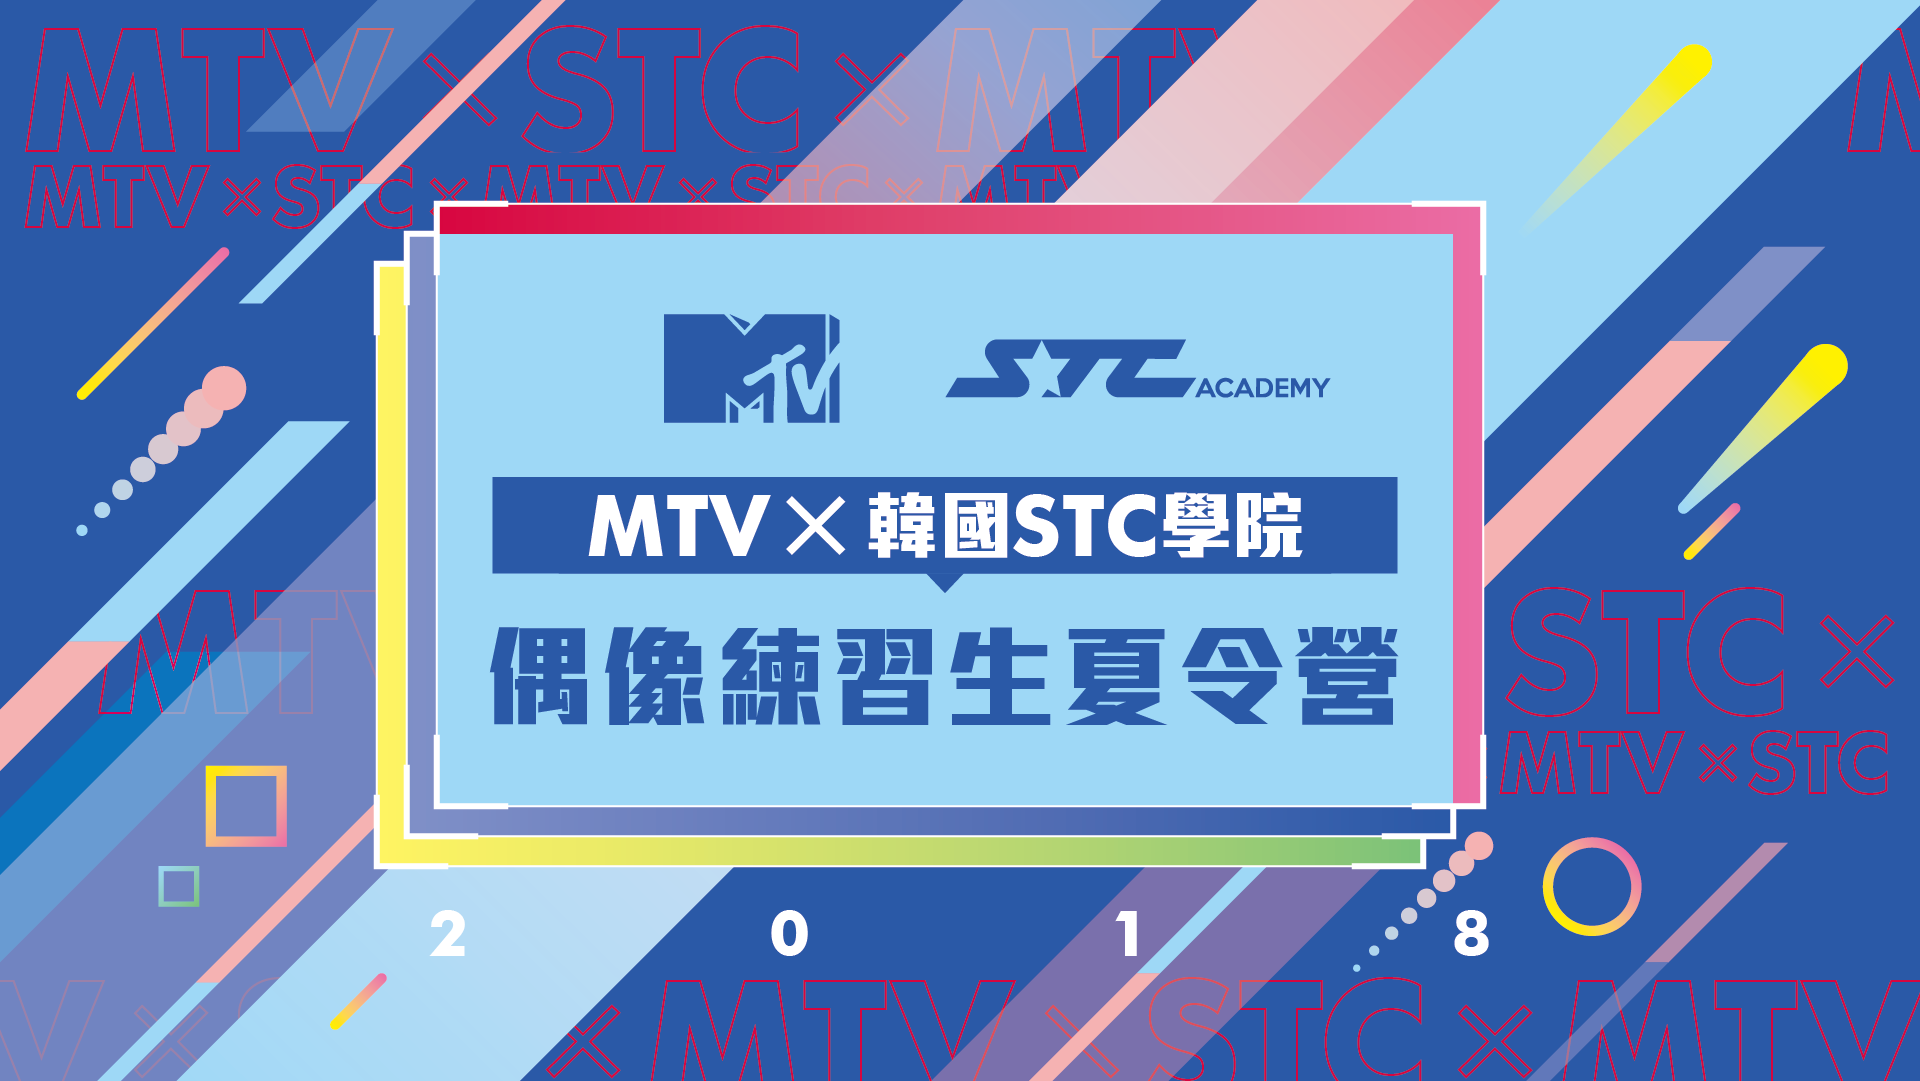 MTV X 韓國STC學院夏令營-主視覺